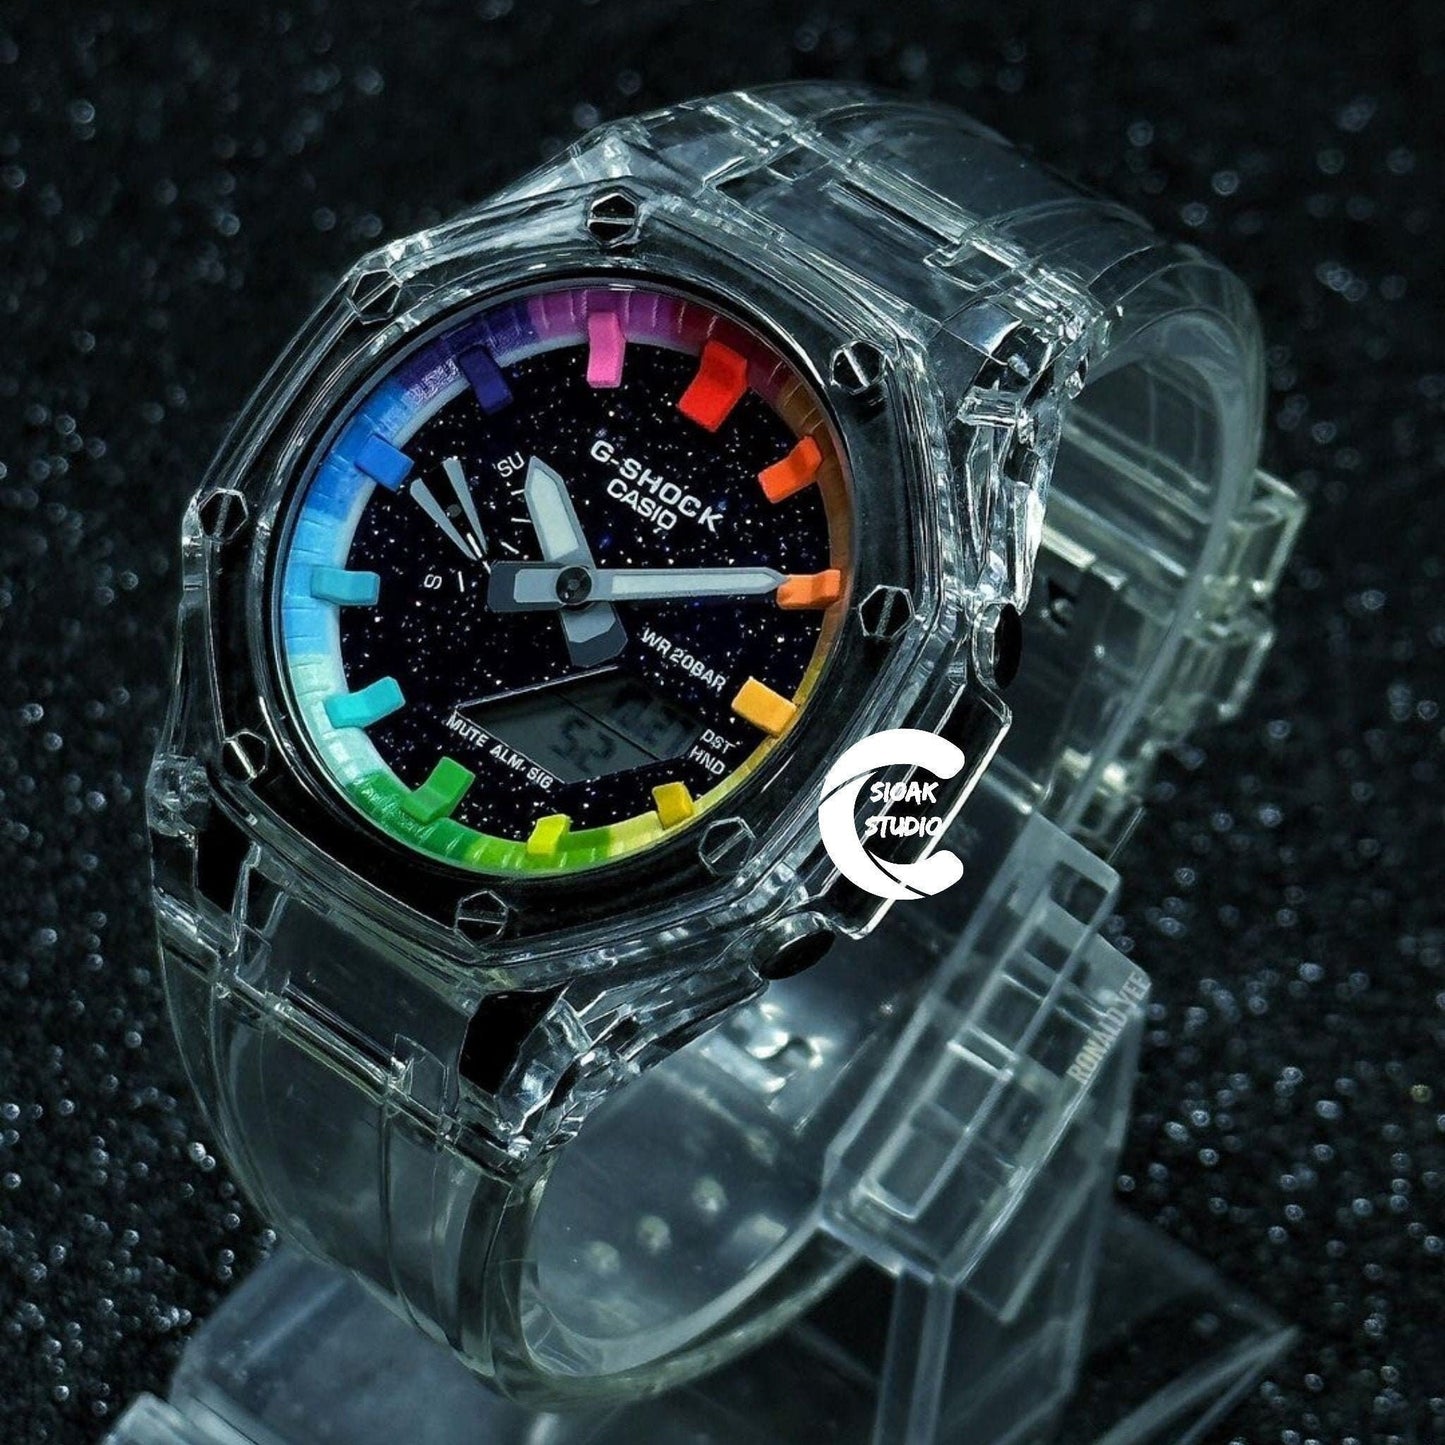 Casioak Mod Watch Transparent Case Strap Rainbow Time Mark Purple Dial 44mm - Casioak Studio